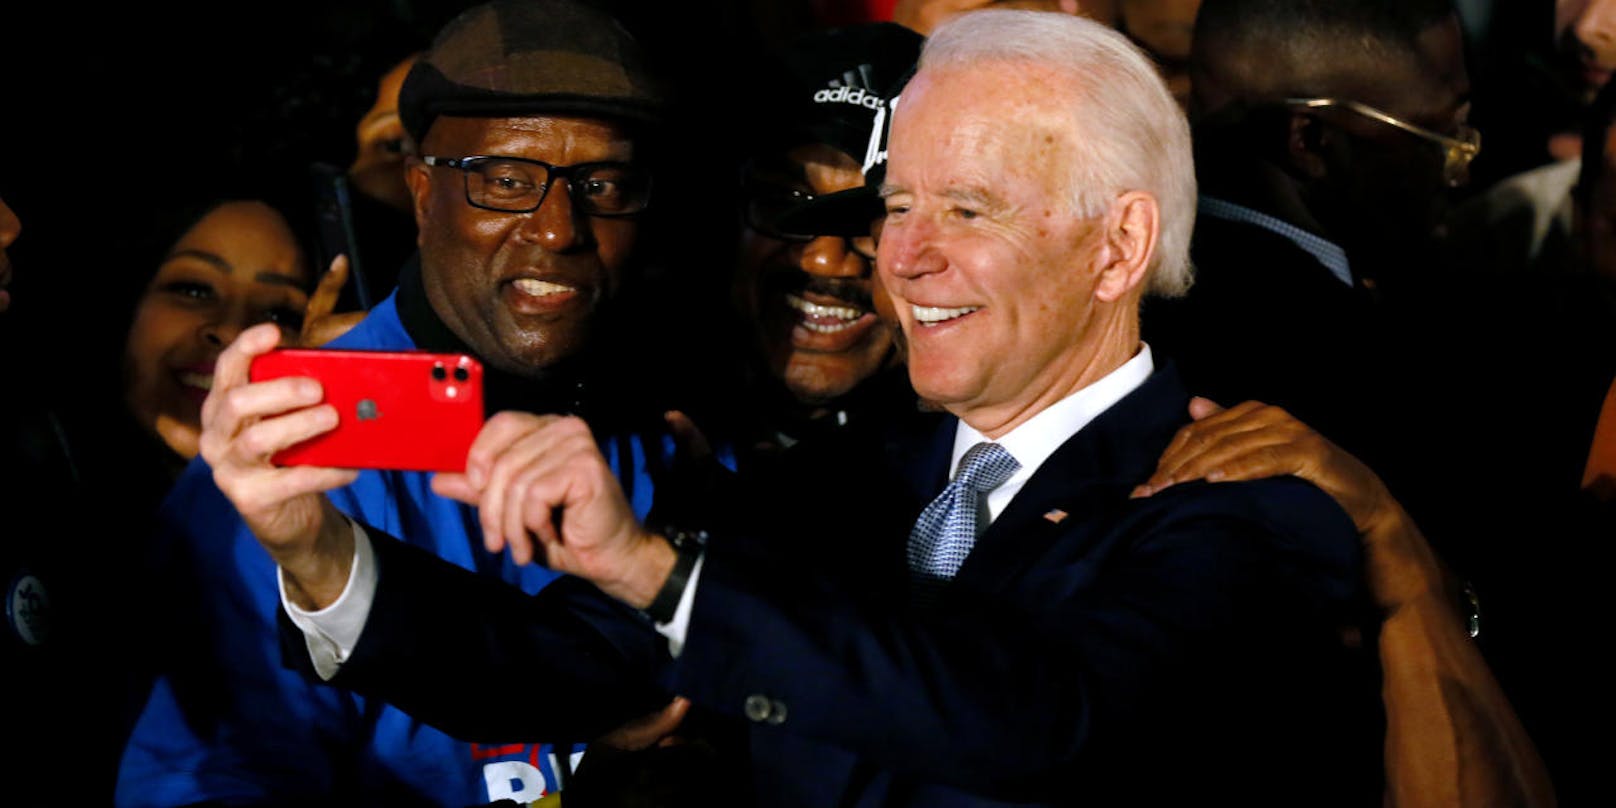 <b></b>Joe Biden erfreut sich bei afroamerikanischen Wählern großer Beliebtheit.